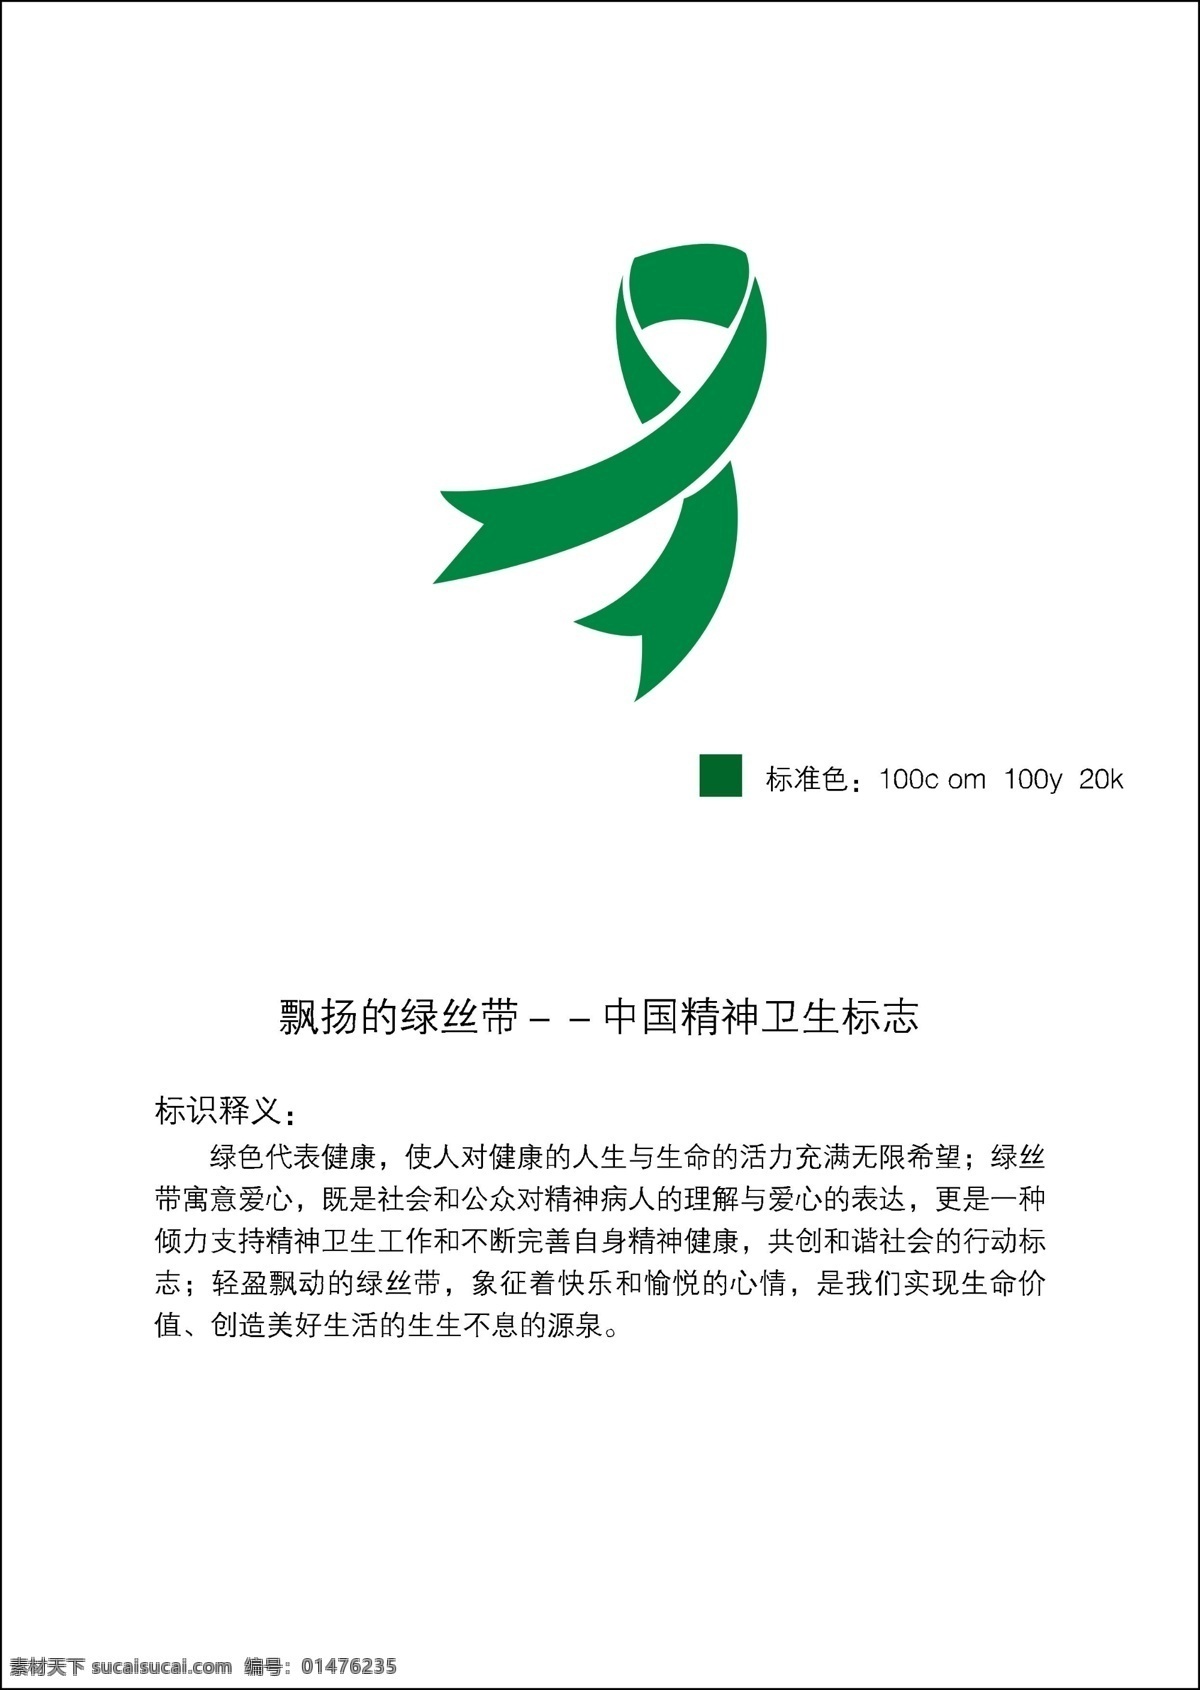 中国 精神卫生 标志 绿丝带 绿绸带 标志设计 广告设计模板 源文件